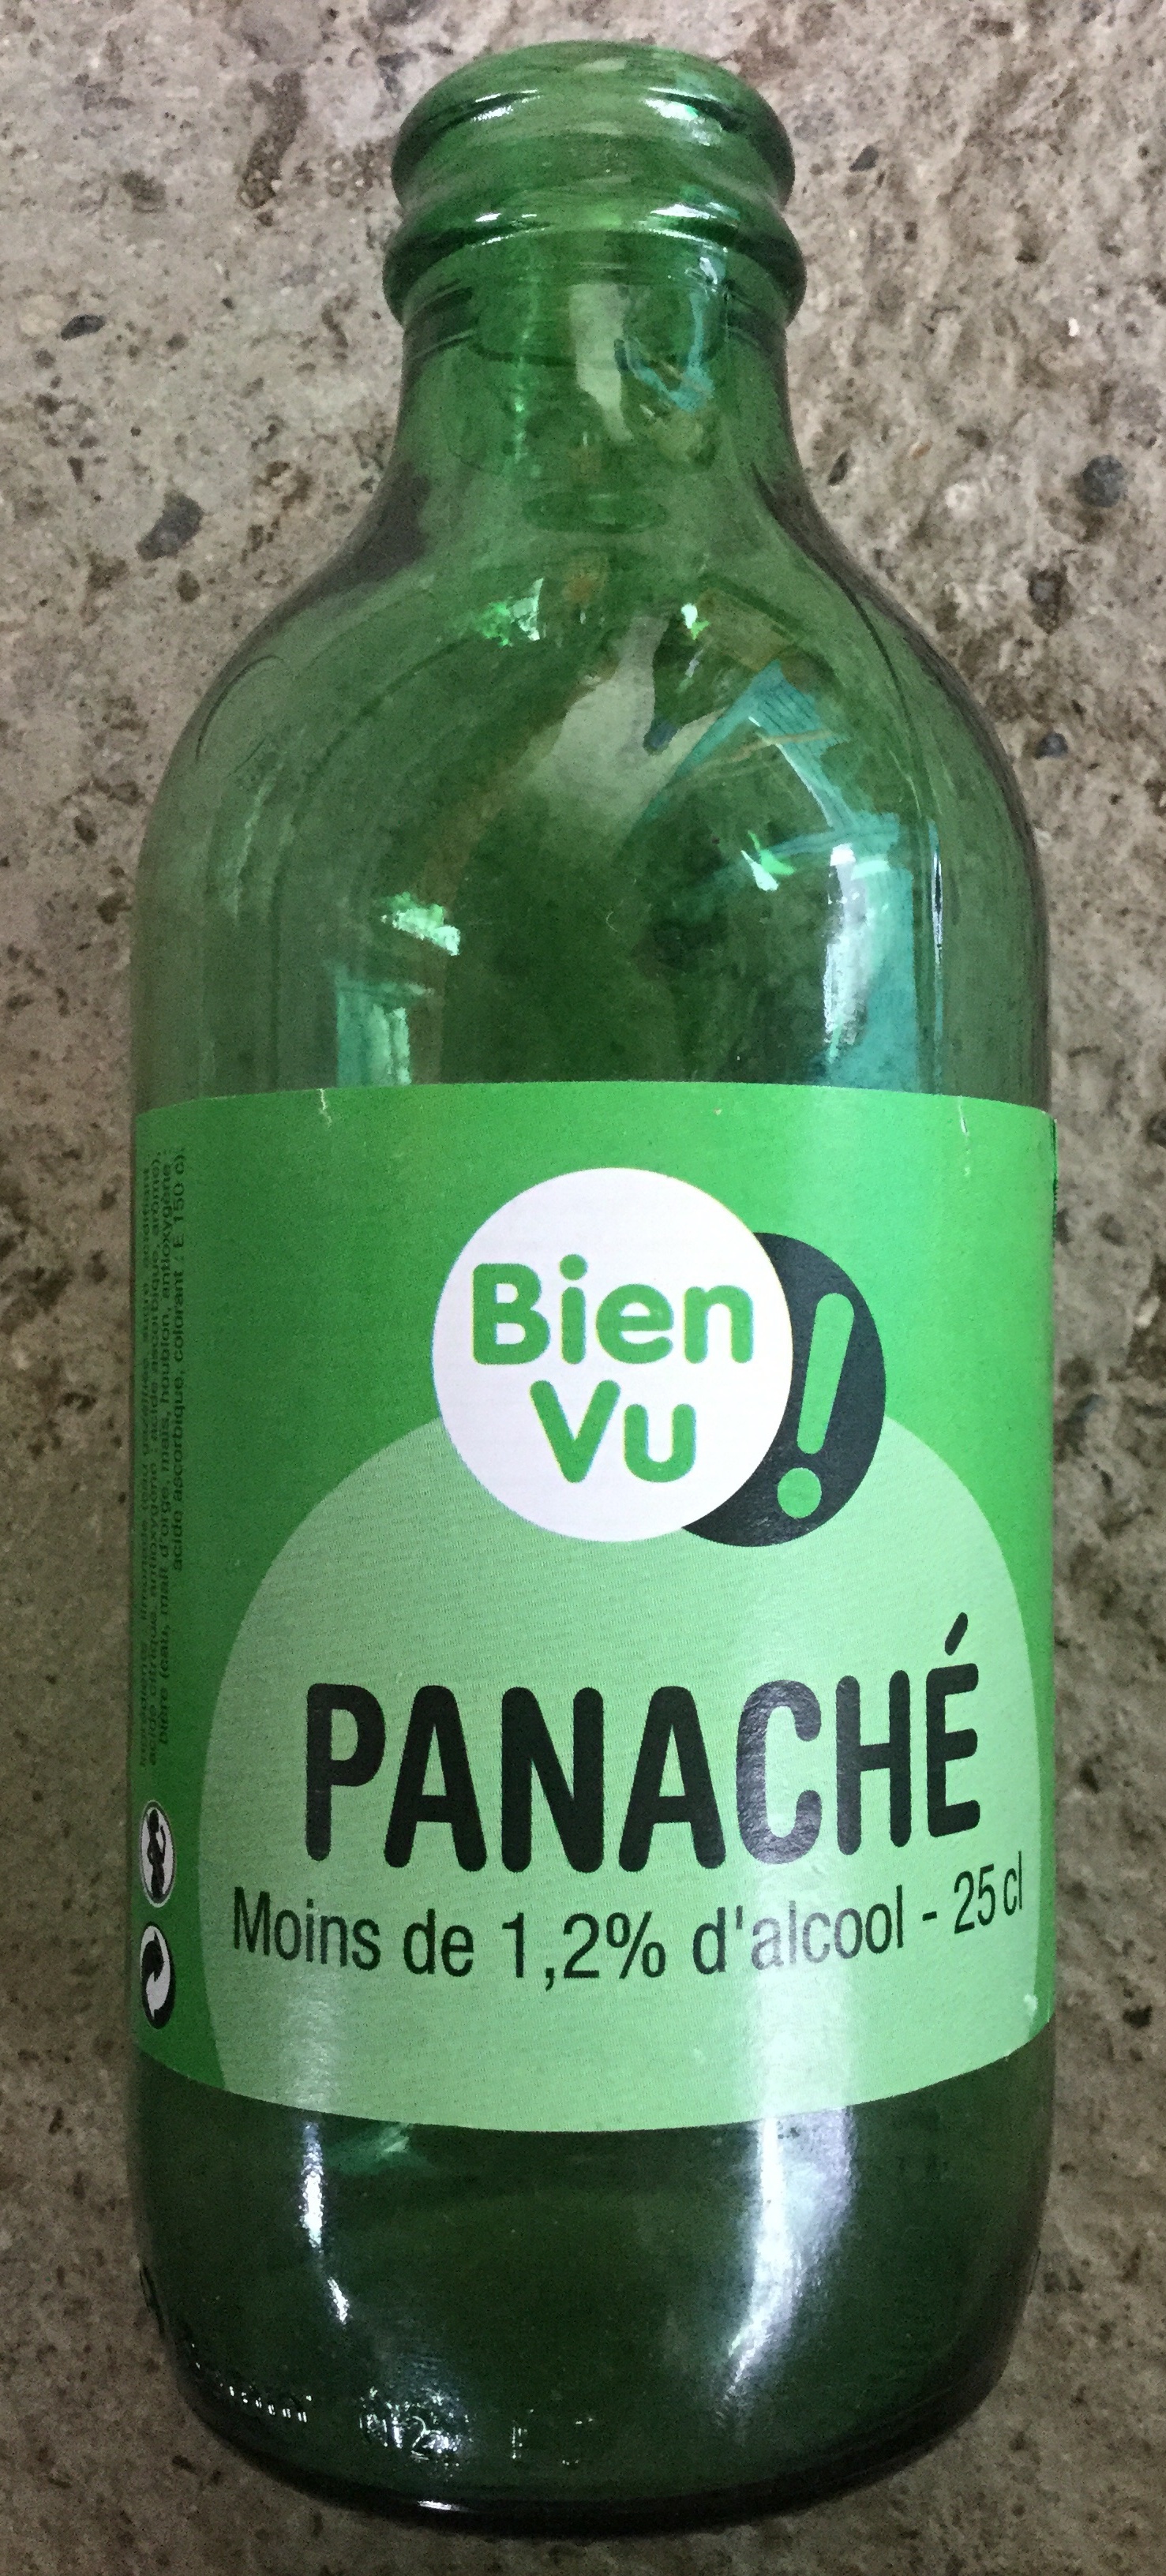 Panaché - Product - fr